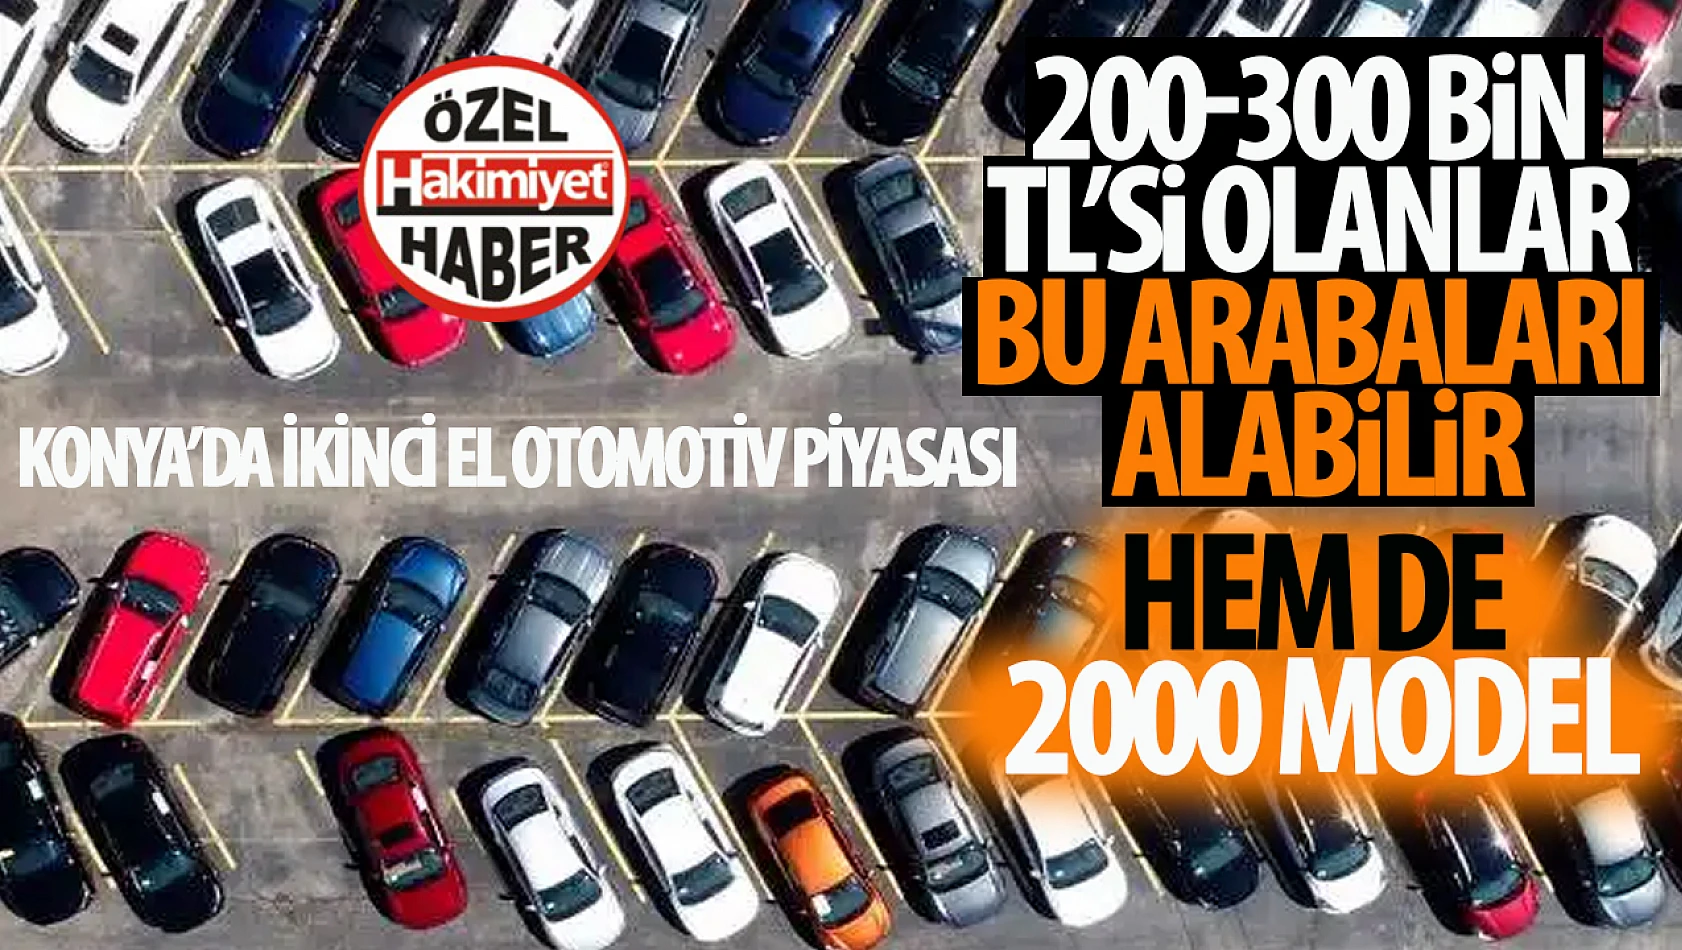 Konya'da 2000 Model Araçların Fiyatları: 200-300 Bin Lirası Olanlar Bu Otomobilleri Alabilir